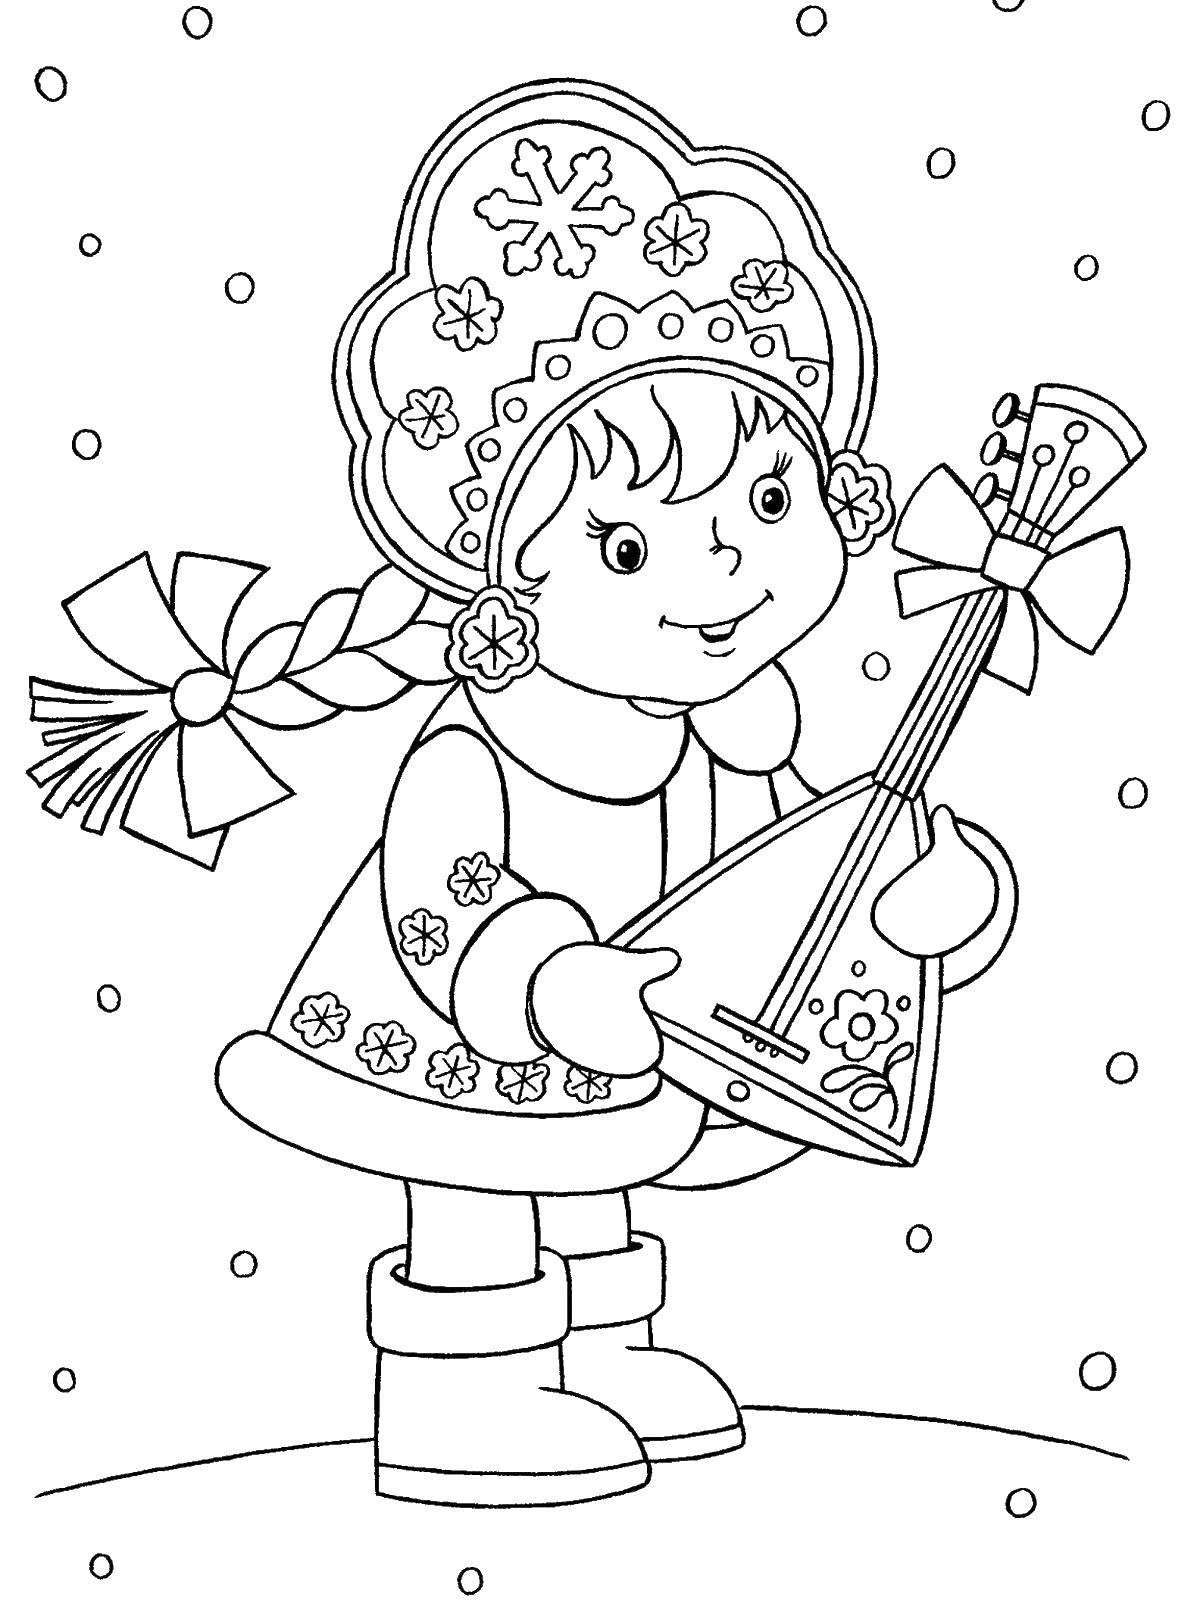 Название: Раскраска Снегурочка сбалалаикой. Категория: раскраски для девочек. Теги: балалайка, снегурочка.